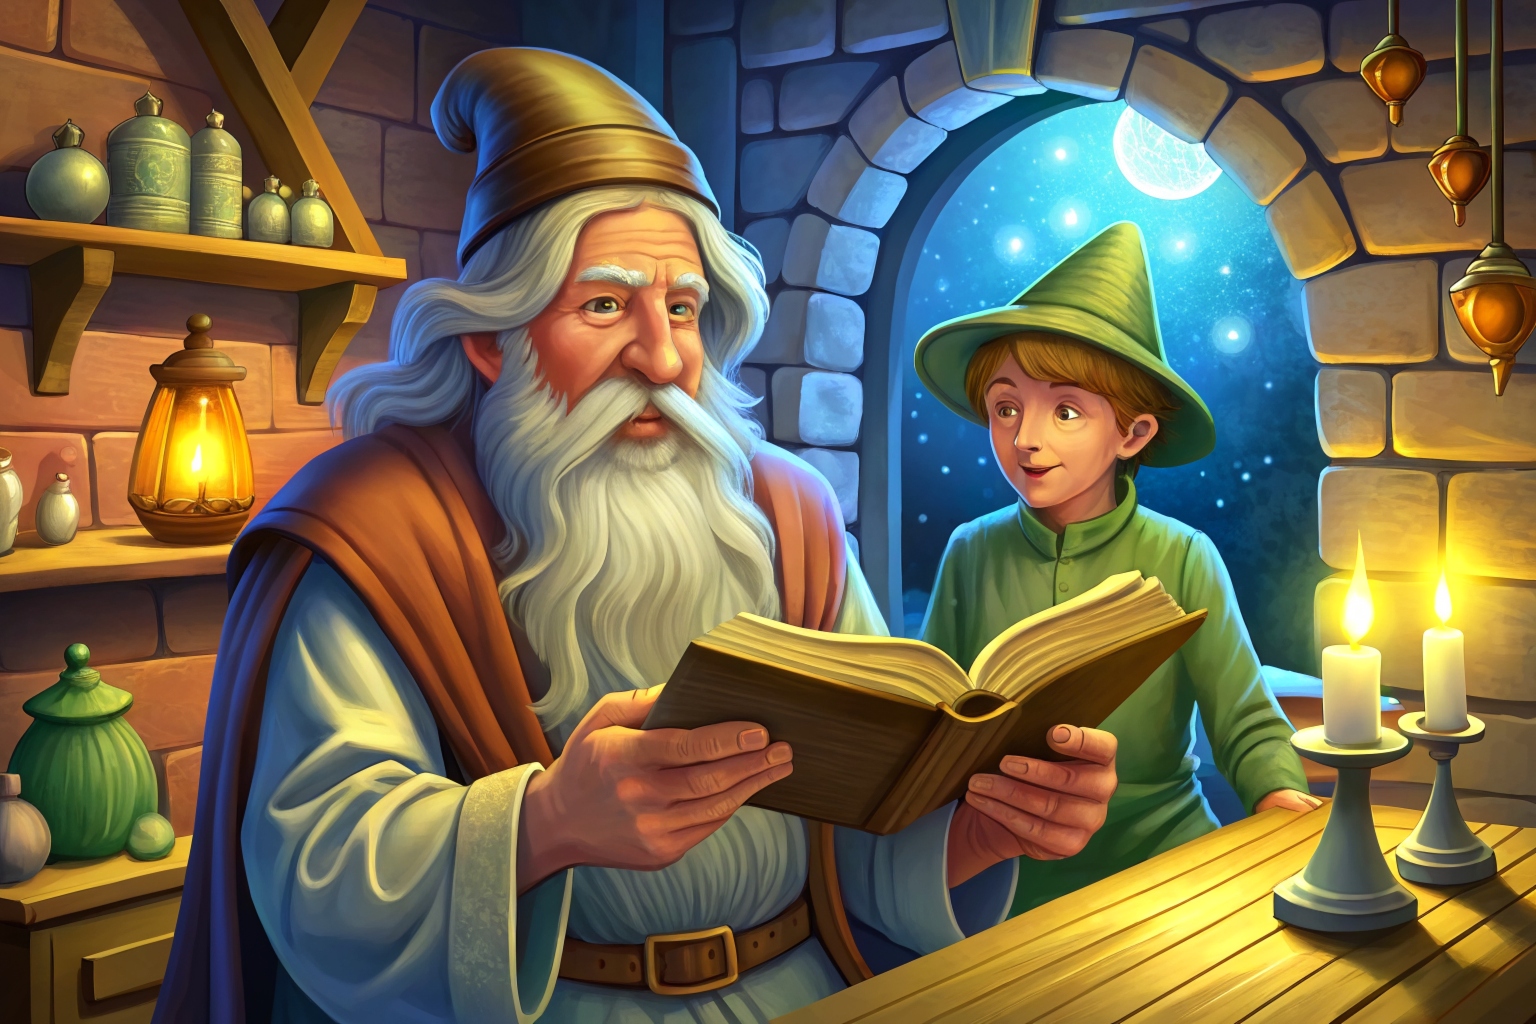 Волшебник и его ученик - интересная сказка